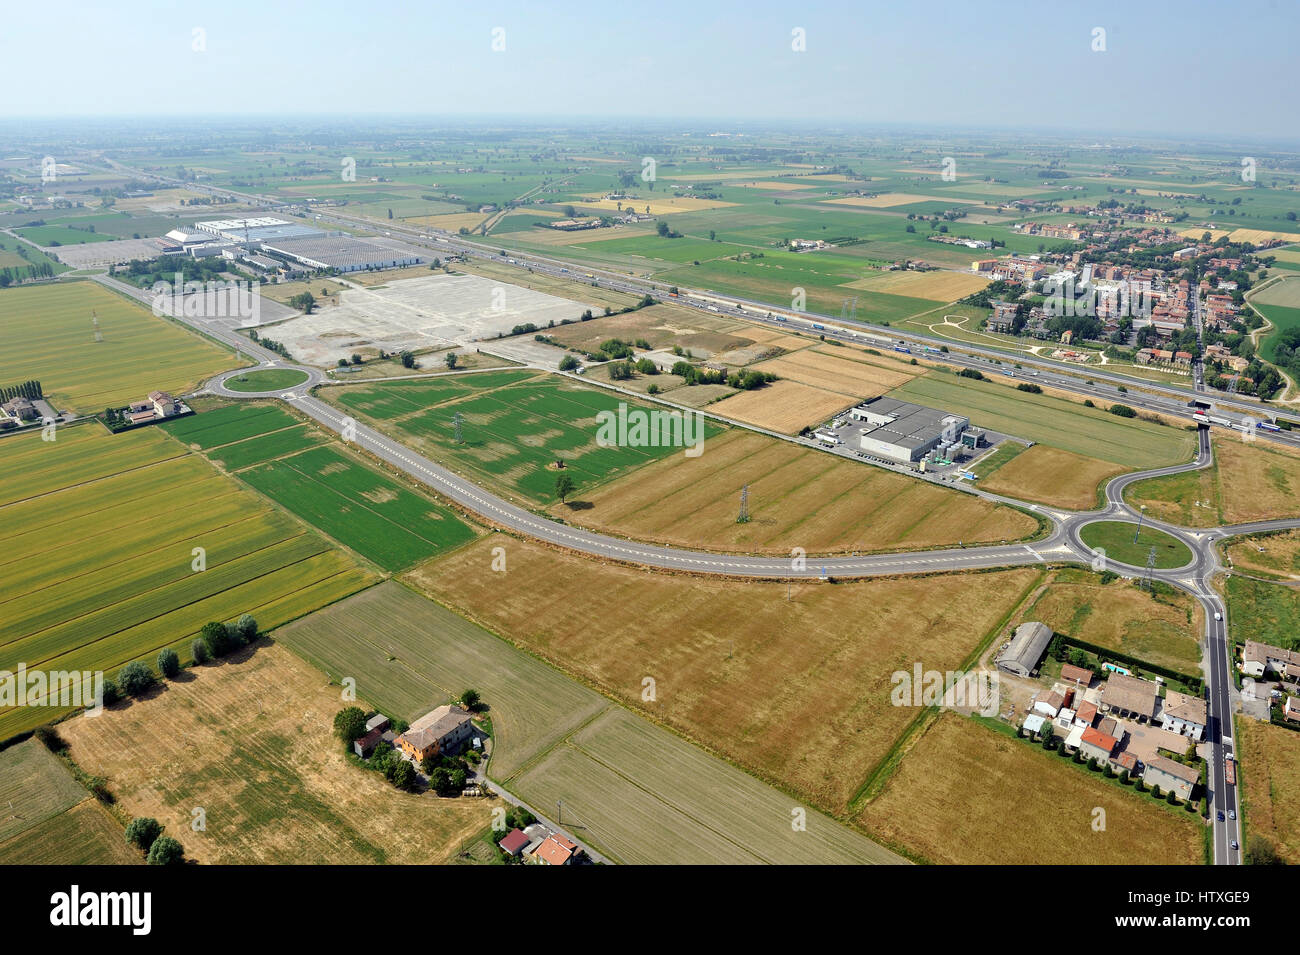 Vista aerea del nuovo centro shopping mall, costruzione condominio vicino a Parma, Emilia Romagna, Italiy, autostrada, A1 Foto Stock